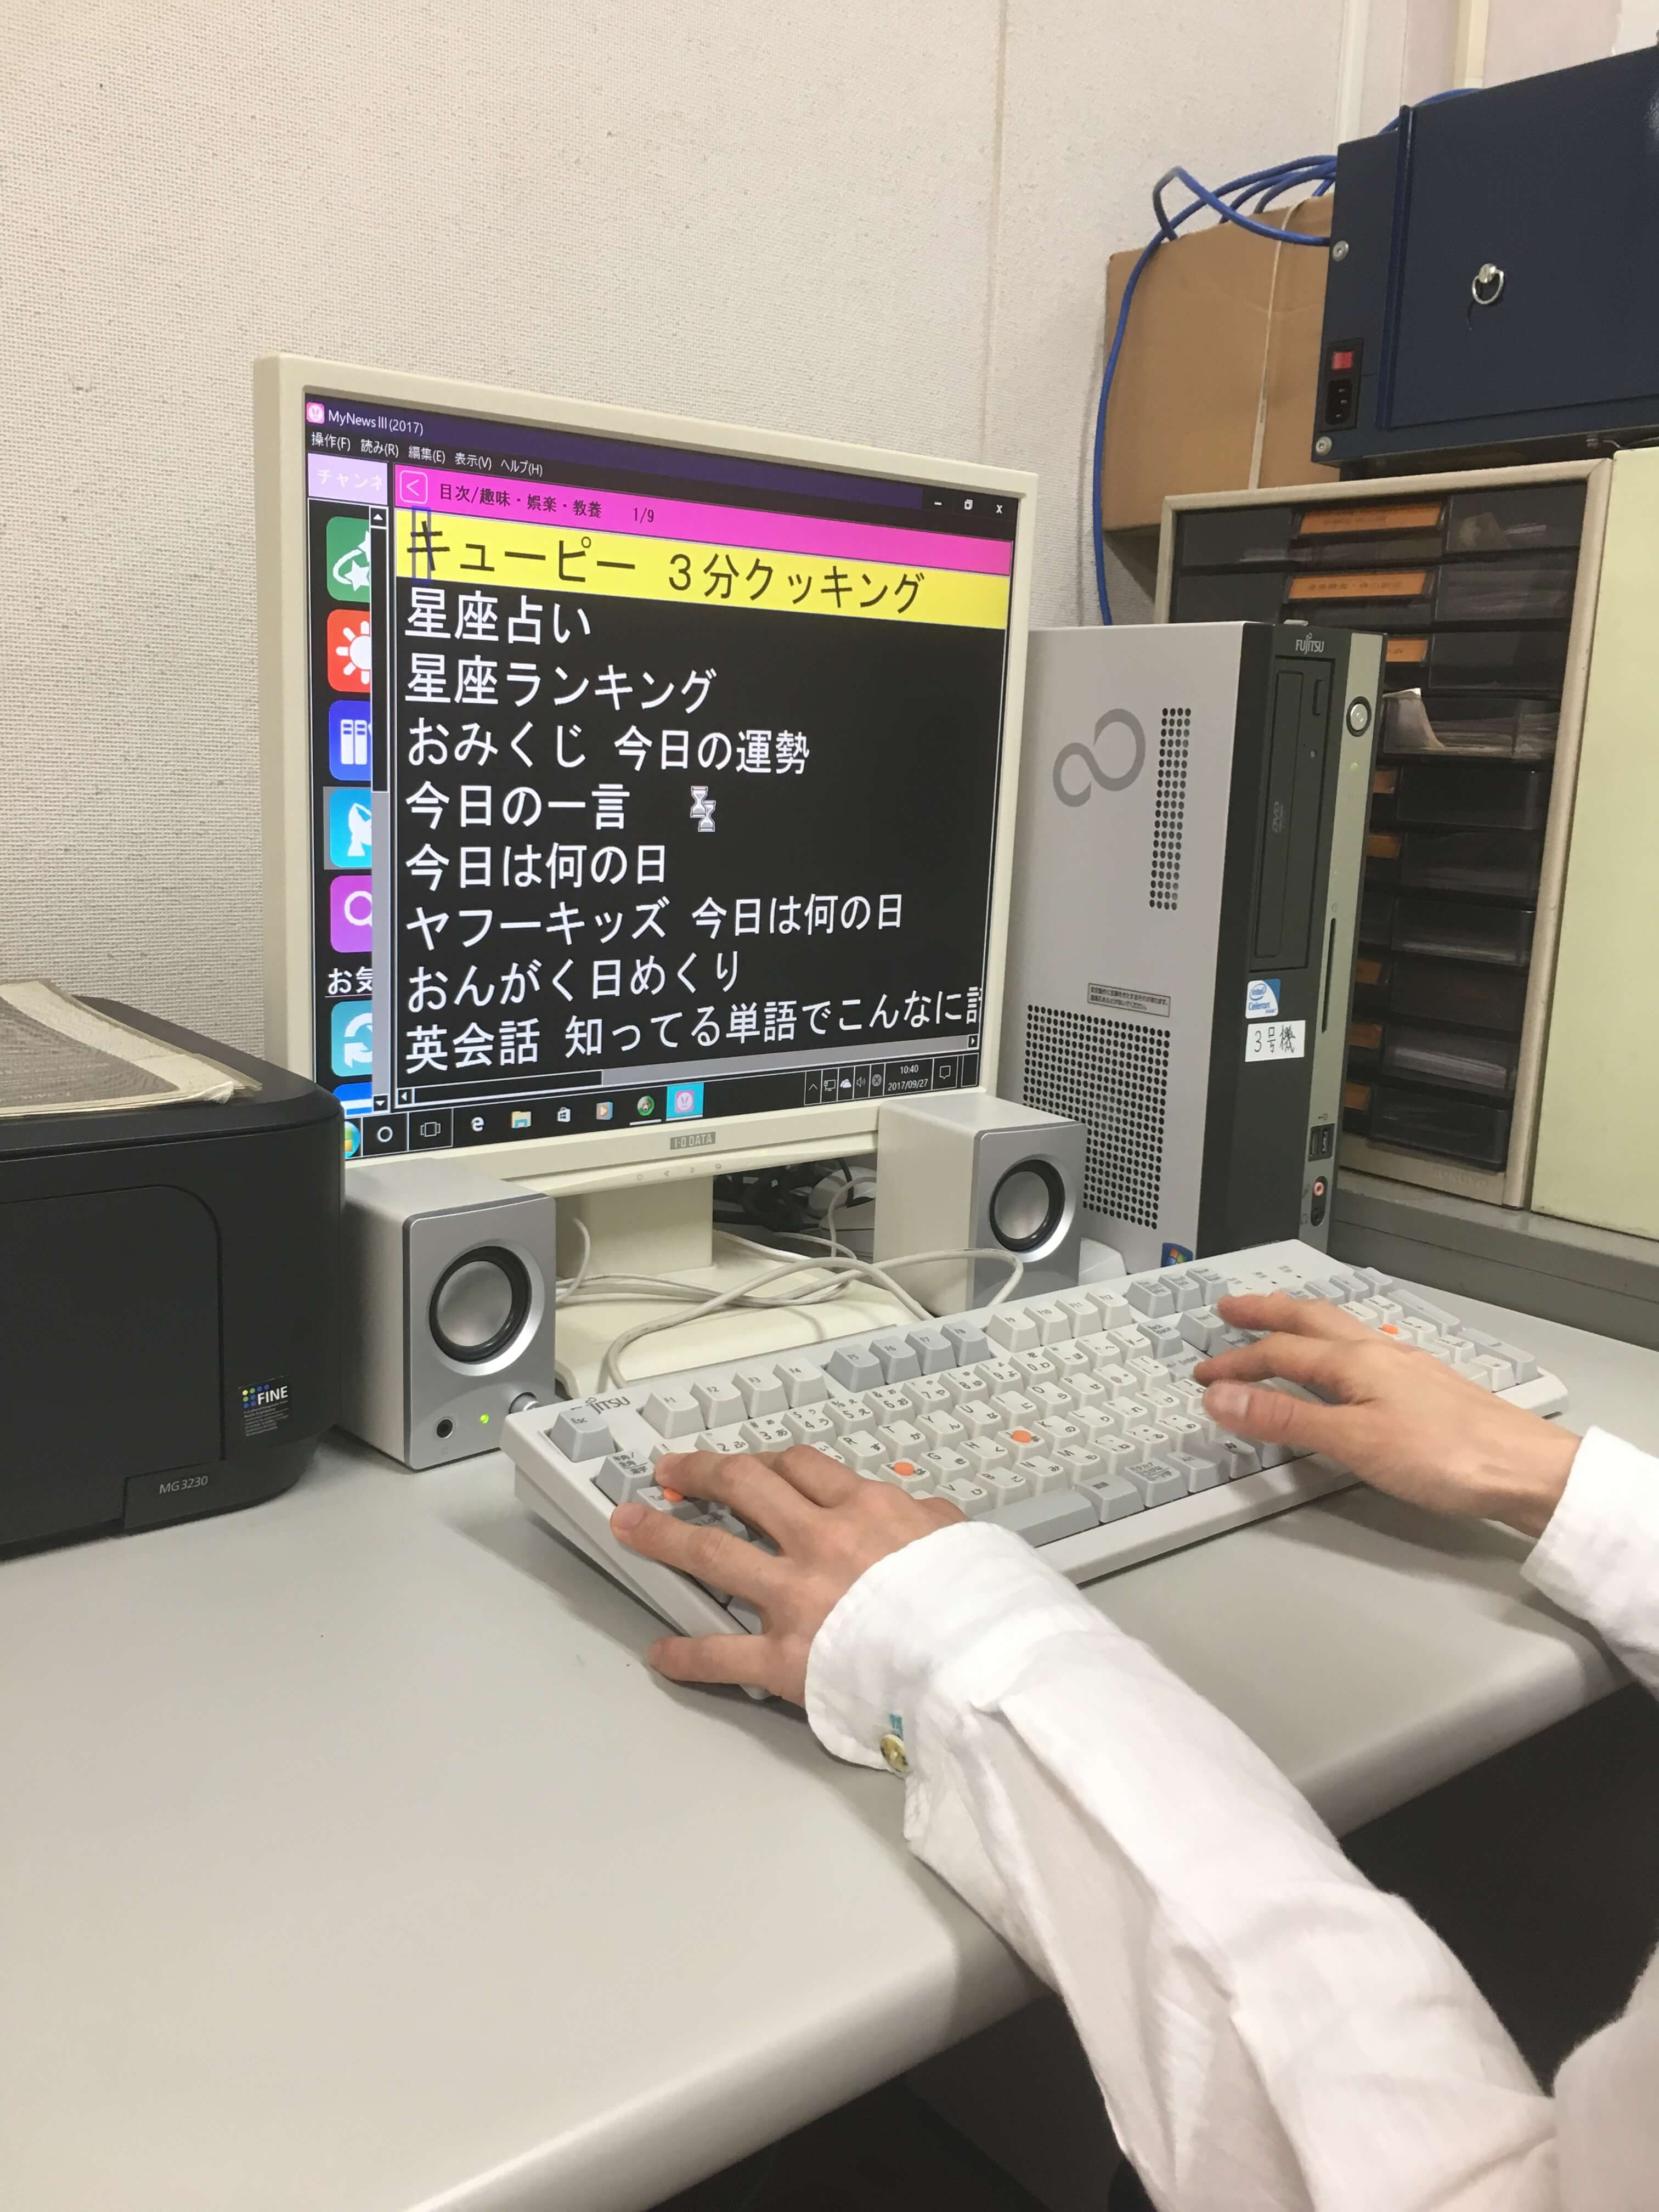 「机の上のパソコンの画面に白黒反転した目次画面が出ていてキーボードで操作をしようとしています。」